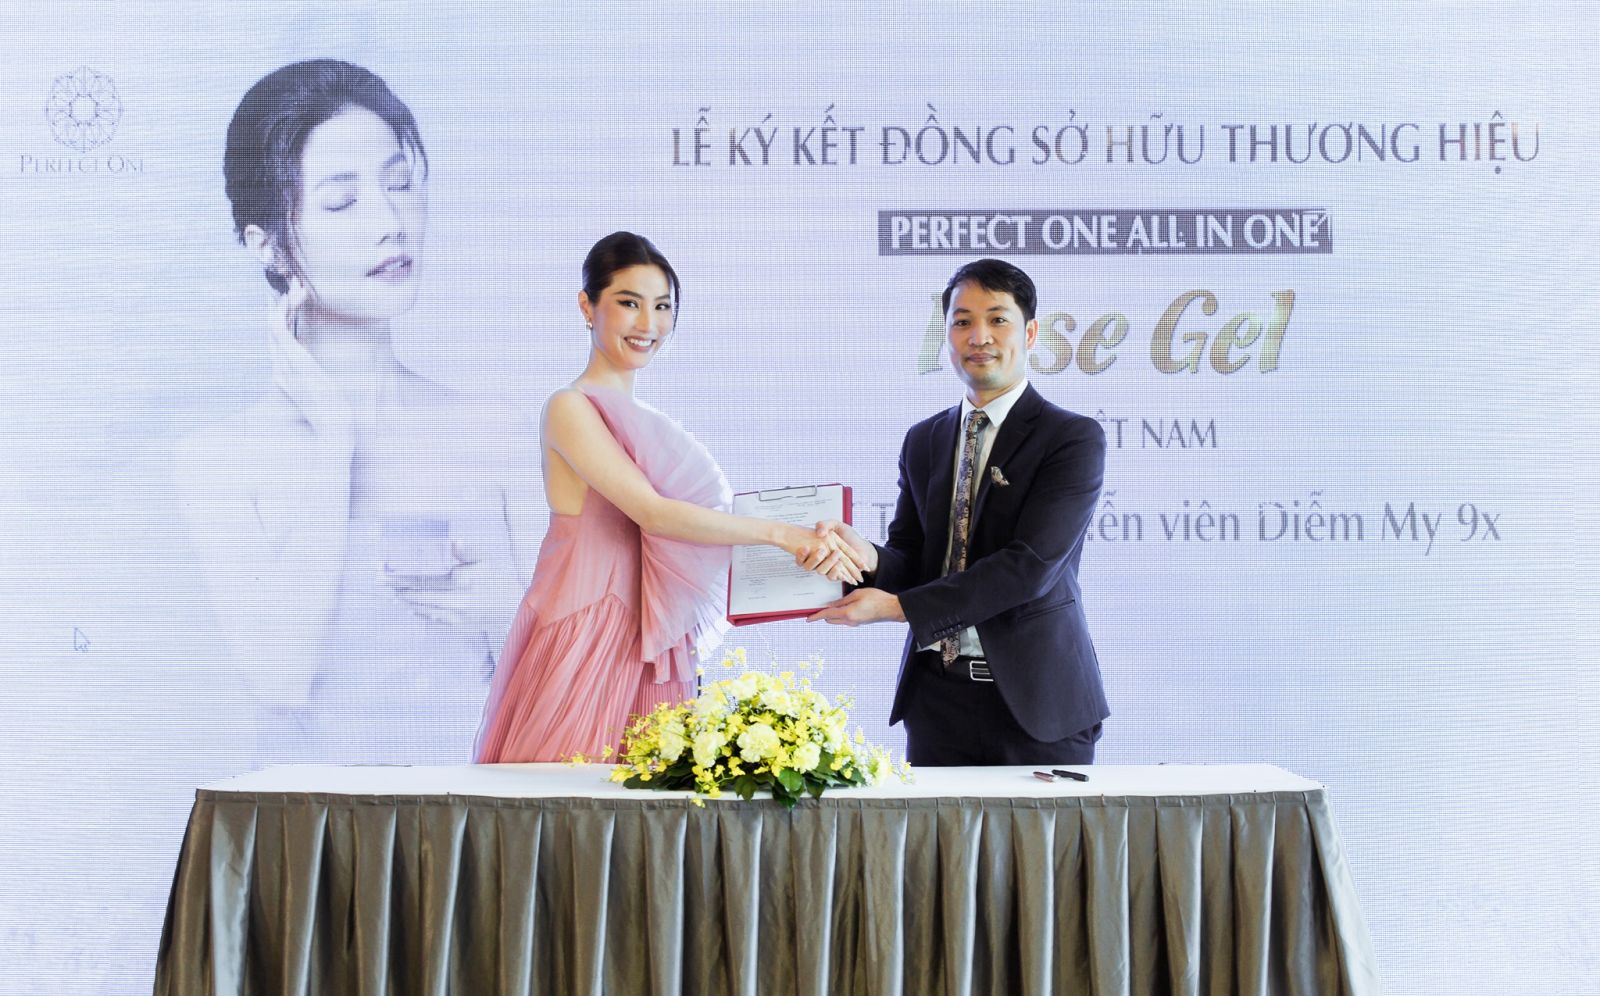 Diễm My 9X mở rộng hợp tác kinh doanh, đồng sở hữu thương hiệu PERFECT ONE Rose Gel của Nhật Bản tại Việt Nam